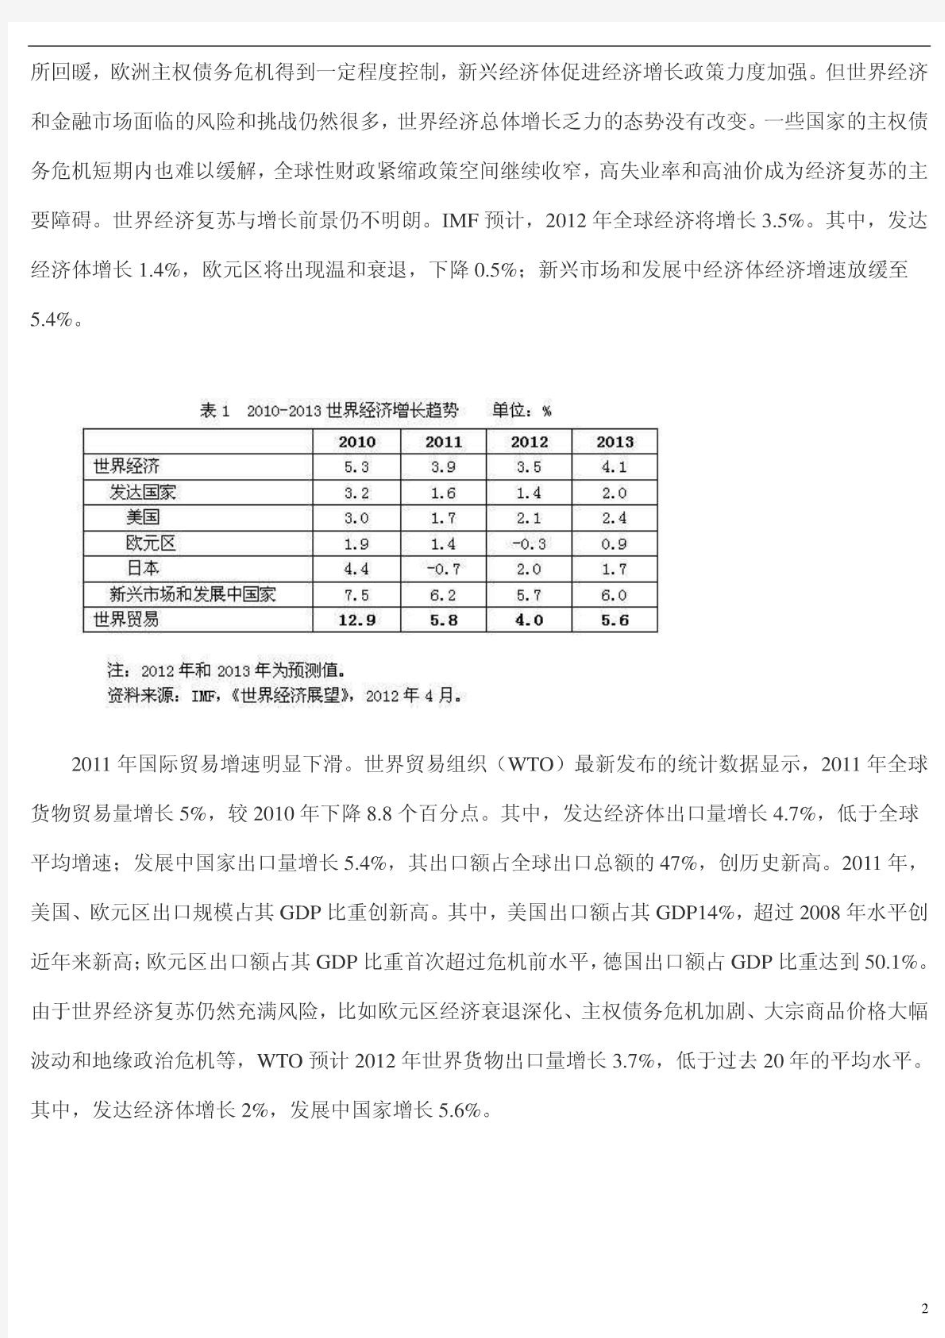 中国对外贸易形势报告(2012年春季)